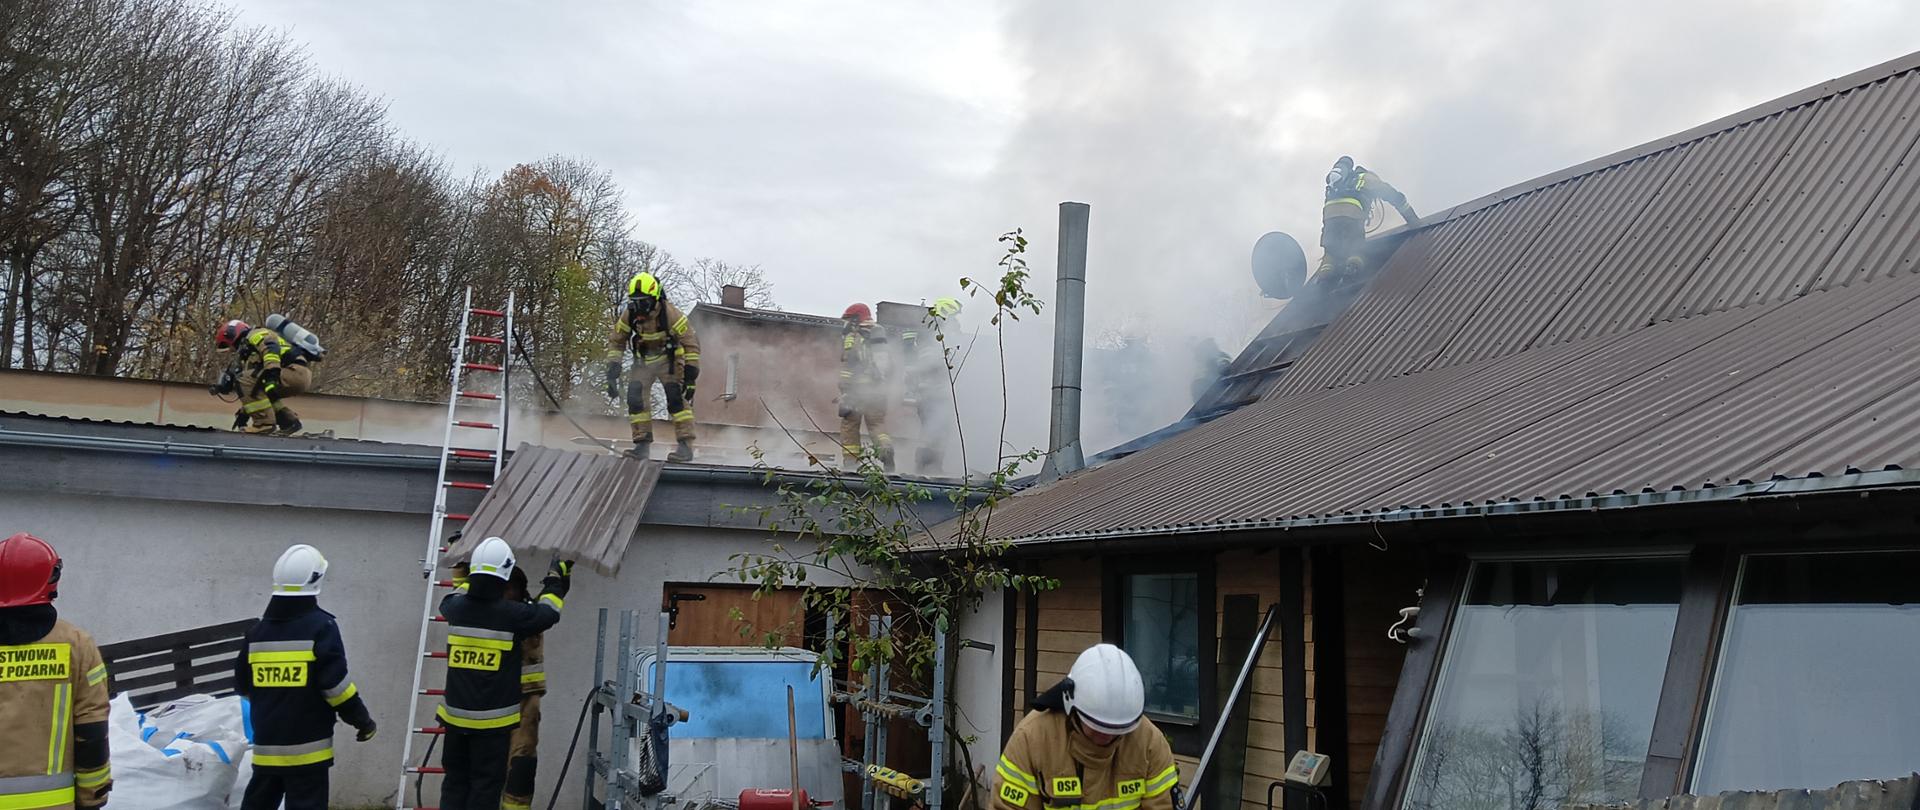 Strażacy podczas gaszenia pożaru konstrukcji dachu sklepu oraz przyległego budynku kotłowni. ratownicy rozbierają cześć pokrycia dachu.